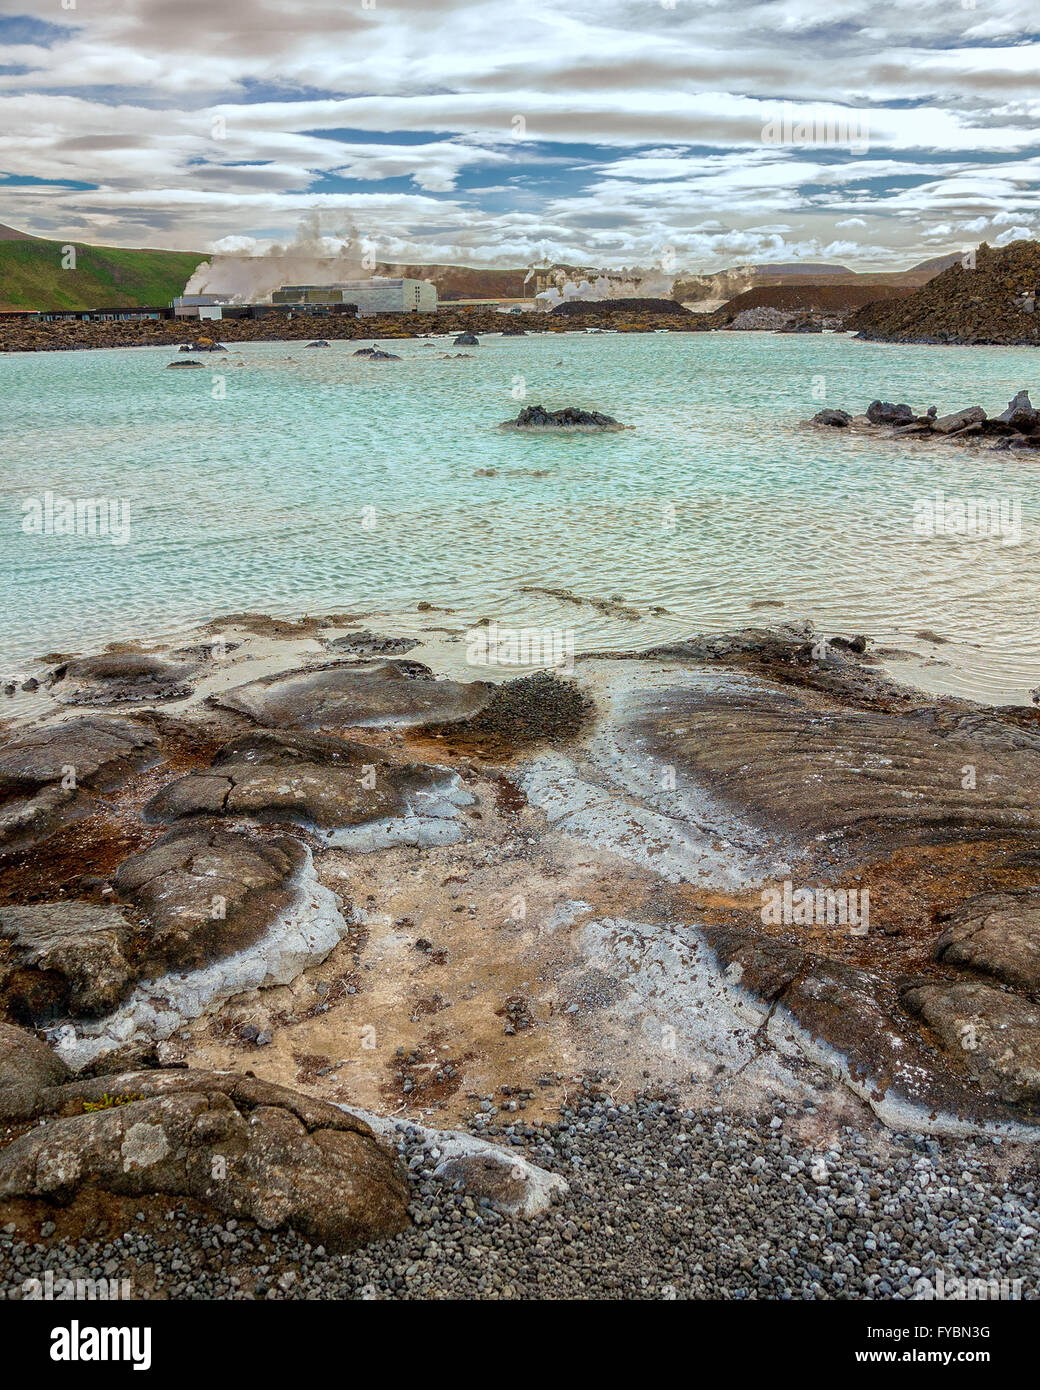 Península de Reykjanes, al suroeste de Islandia, Islandia. 5 ago, 2015. El famoso hombre geotermal Blue Lagoon spa situado en un campo de lava en GrindavÃ-k en la península de Reykjanes, al suroeste de Islandia, es alimentada por la salida de agua de la planta de energía geotérmica Svartsengi cercanos (trasero). Sus cálidas aguas son ricas en minerales y reputado para ayudar a las personas con enfermedades de la piel. Un destino turístico favorito, es uno de los lugares más visitados de Islandia, donde el turismo se ha convertido en un creciente sector de la economía. © Arnold Drapkin/Zuma alambre/Alamy Live News Foto de stock